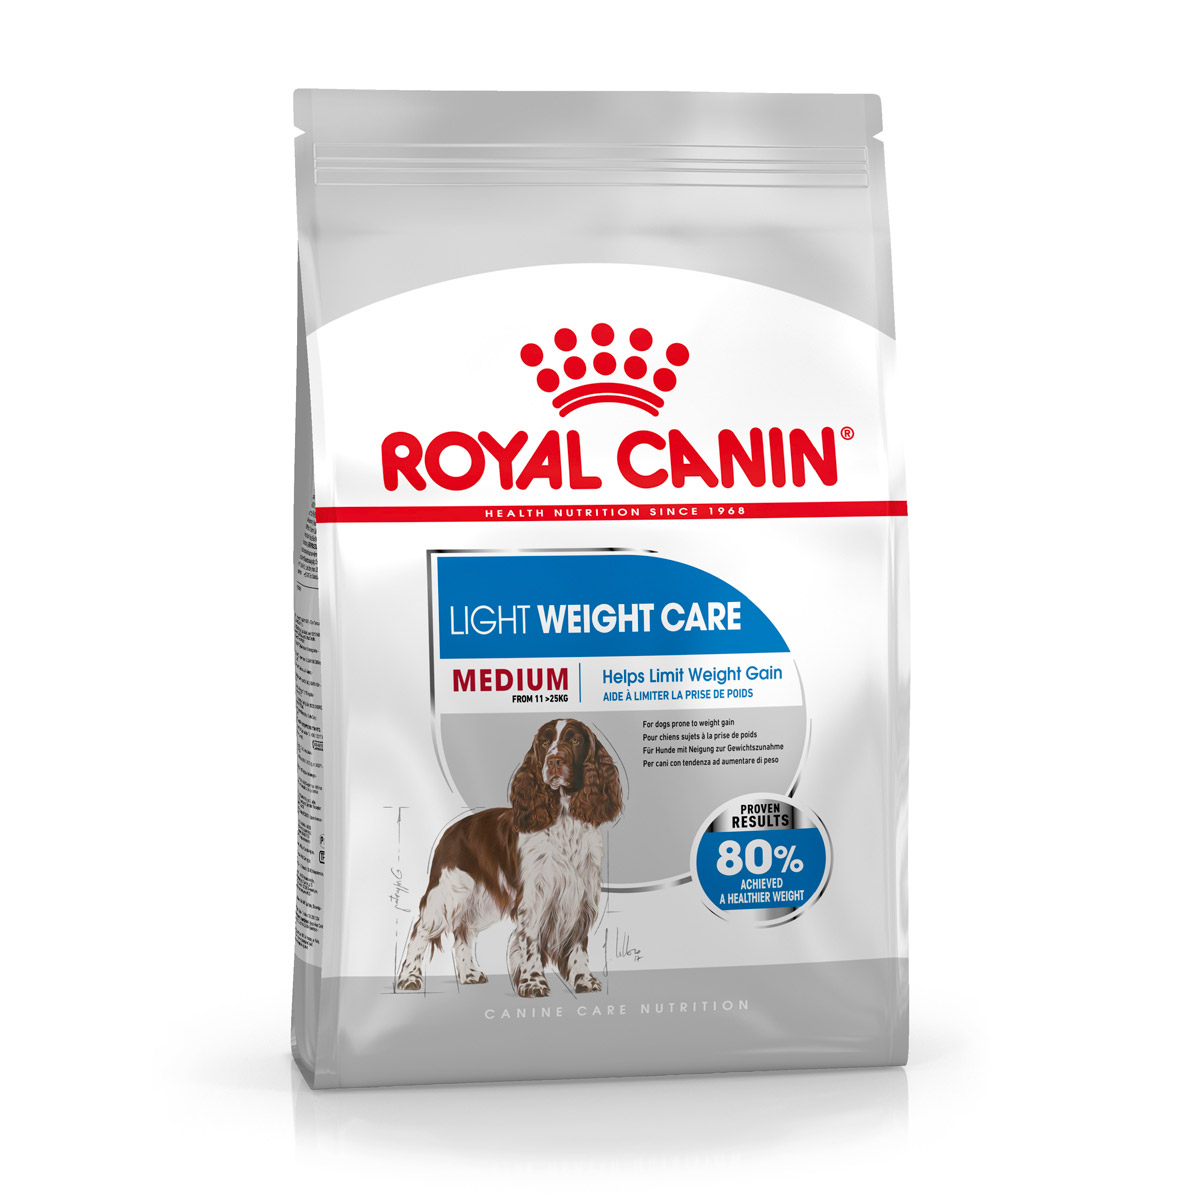 ROYAL CANIN LIGHT WEIGHT CARE MEDIUM Trockenfutter für zu Übergewicht neigenden Hunden 3 kg